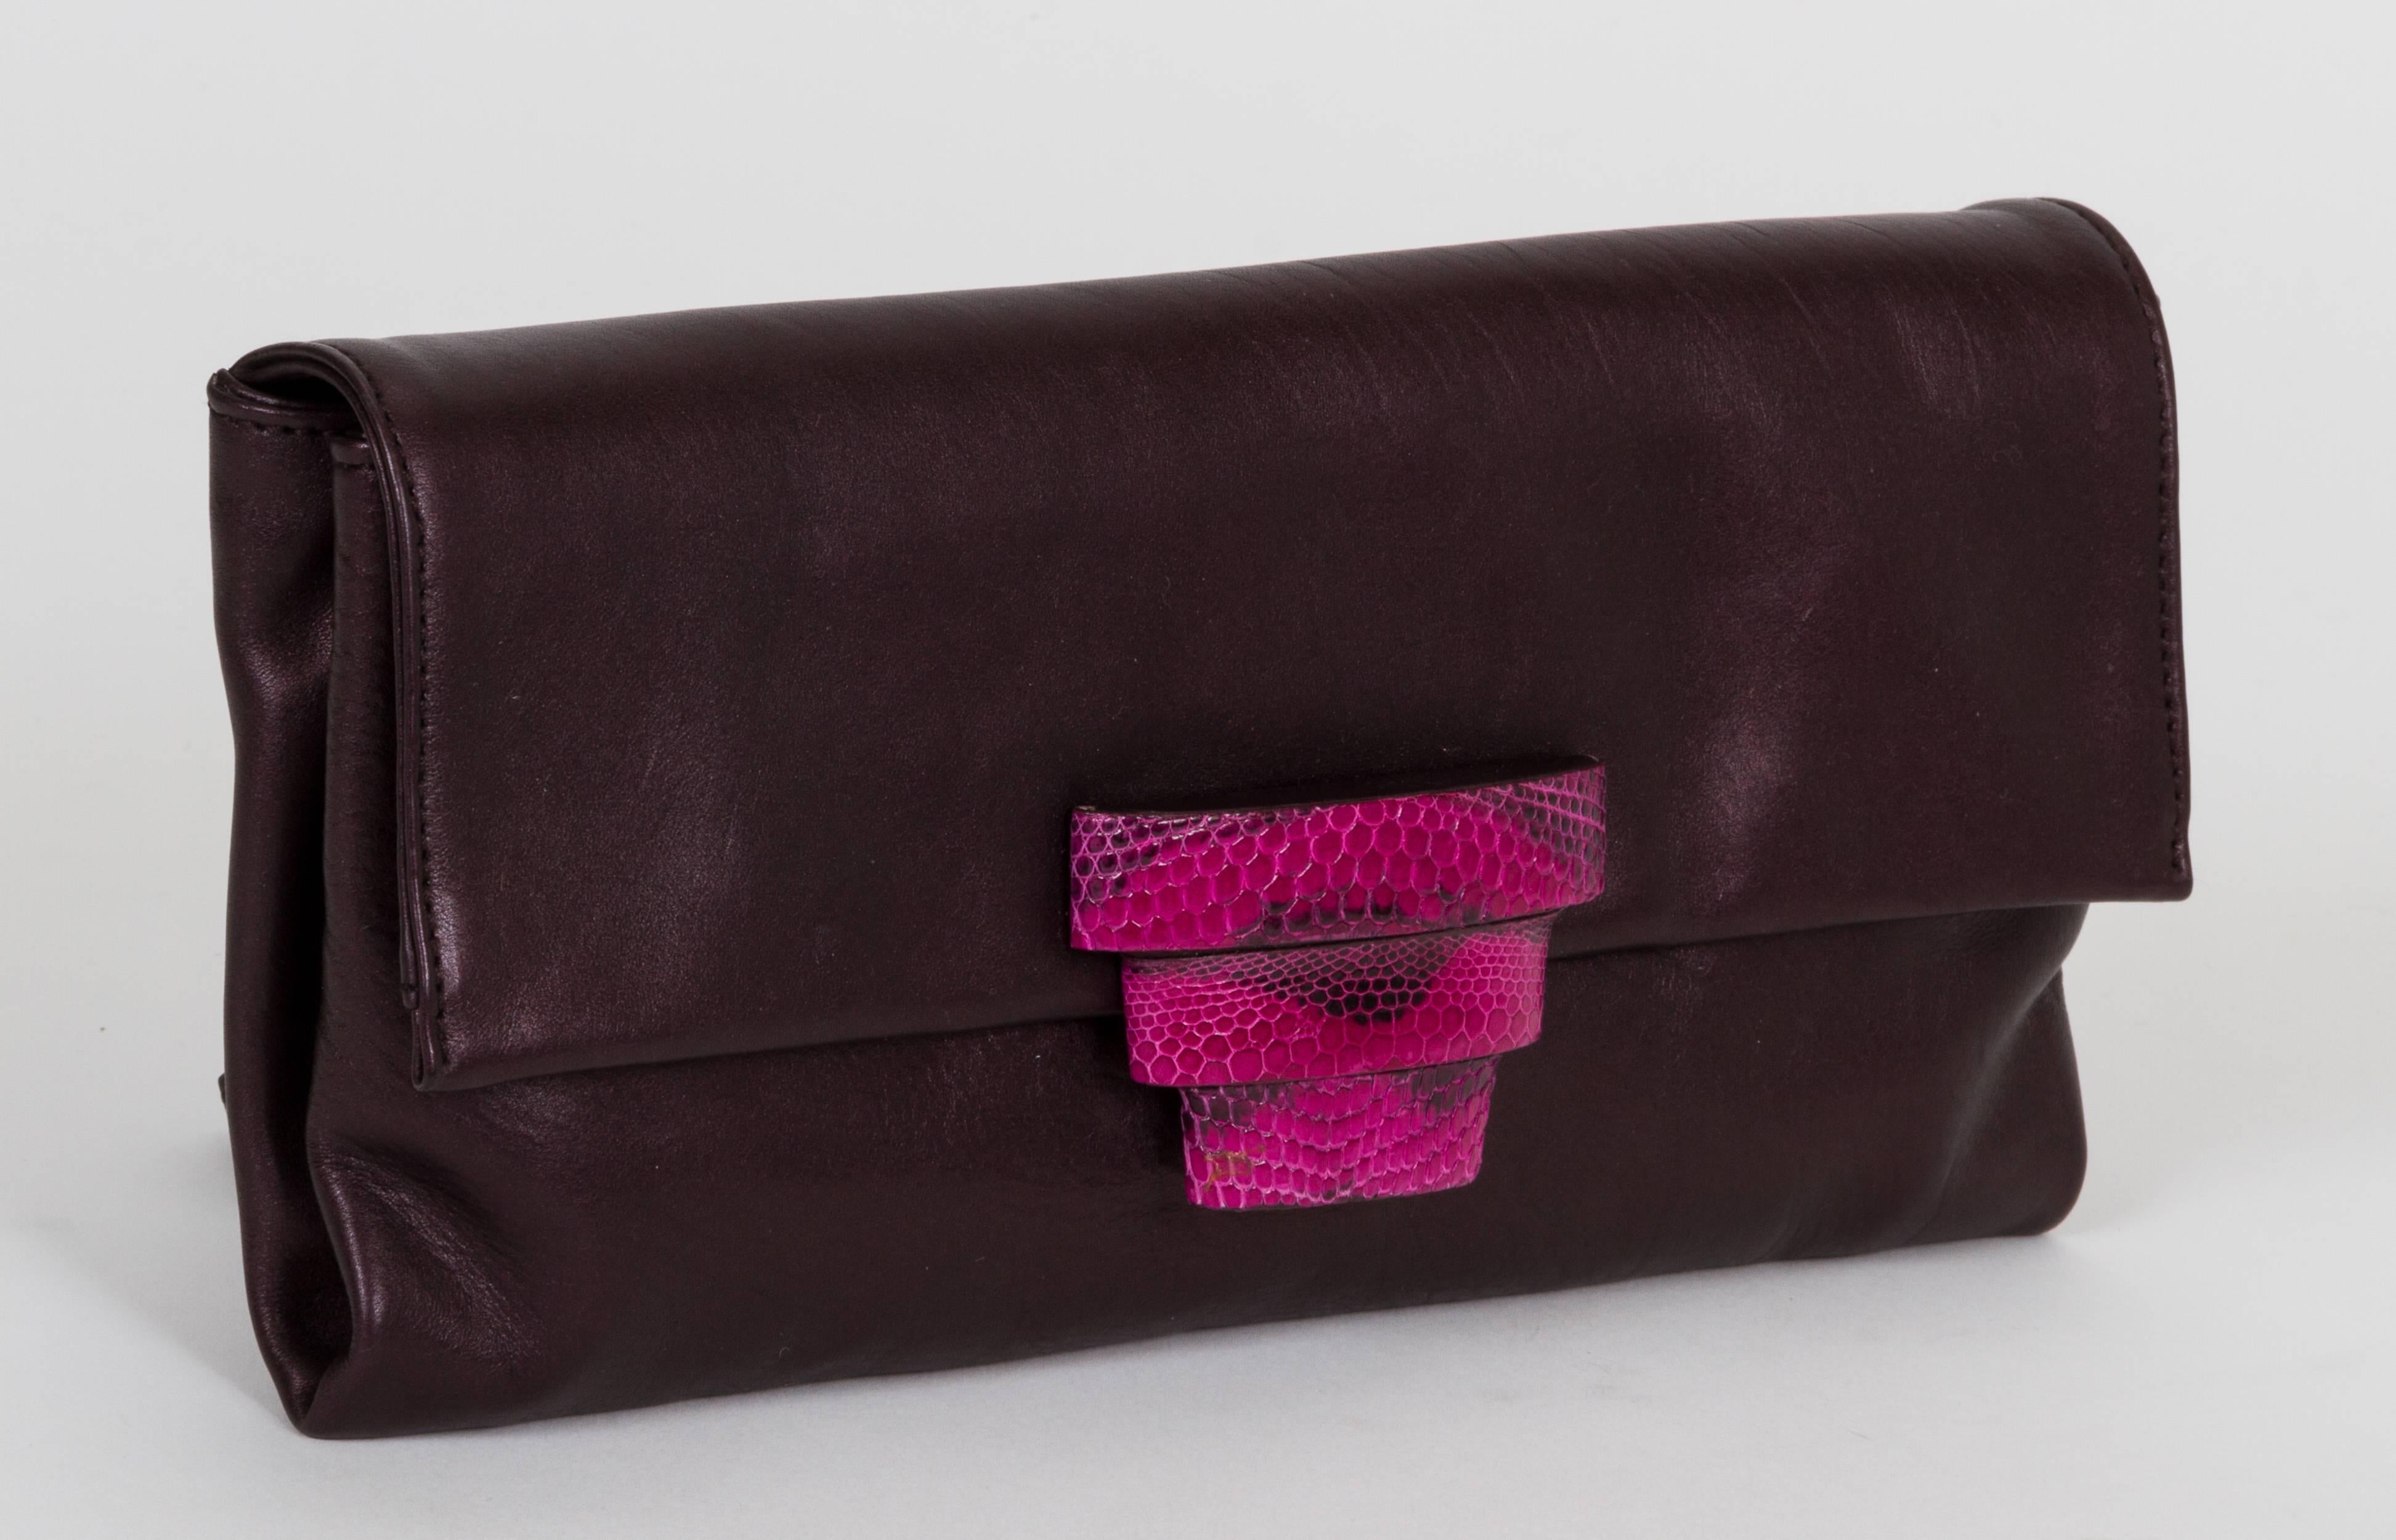 Prada Abendtasche aus weichem lilafarbenem Lammleder mit fuchsiafarbenem Python-Verschluss. Unverfälschtes rosa Seideninterieur mit Reißverschlusstasche. Kommt mit originalem Schutzumschlag. Artikel wird nicht nach Kalifornien versandt, da es dort